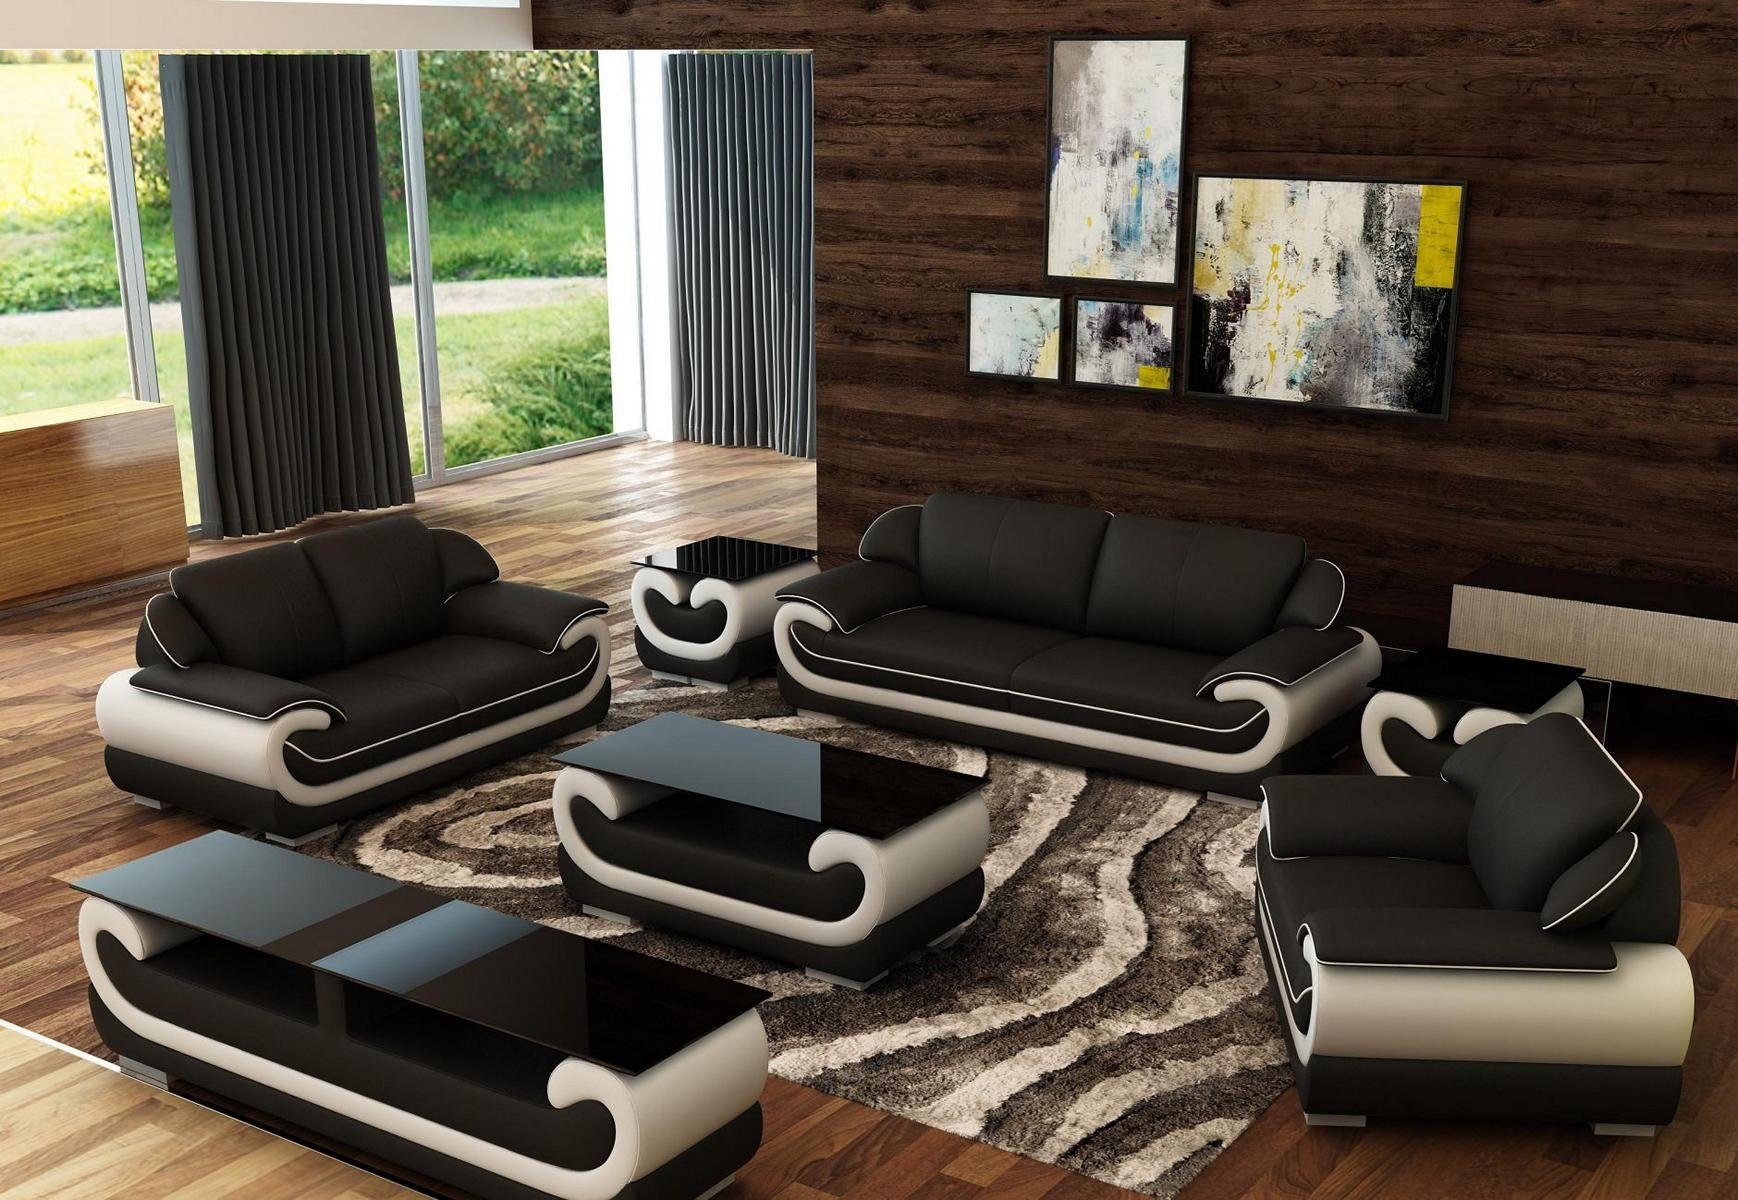 JVmoebel Sofa Sofagarnitur 3+2+1 Sitzer + Hocker Set Polstersofa Couch Designersofa, Made in Europe Schwarz/Beige | Alle Sofas